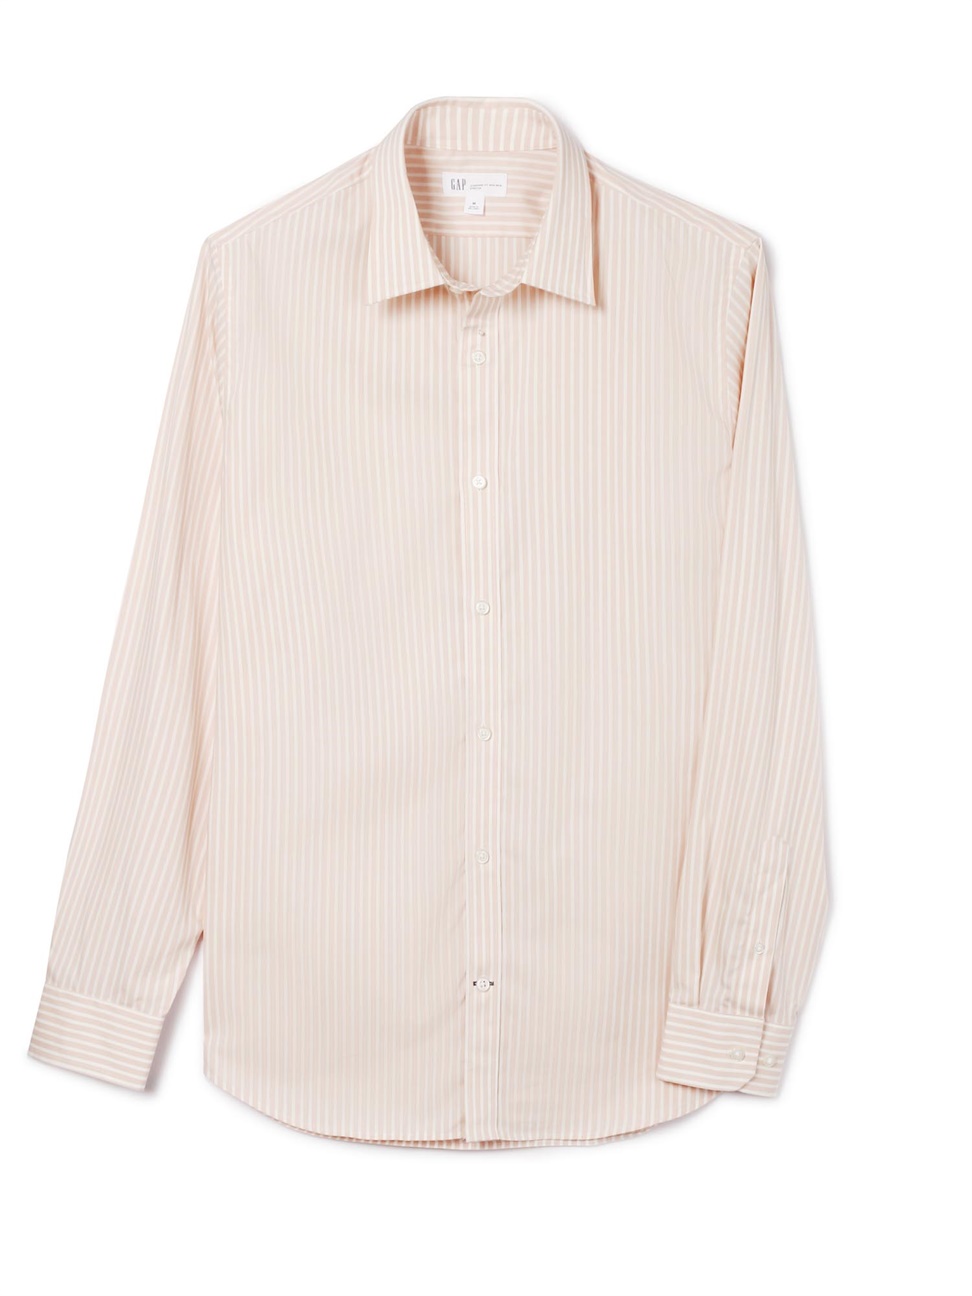 男裝|舒適無褶長袖鈕釦襯衫-粉色條紋